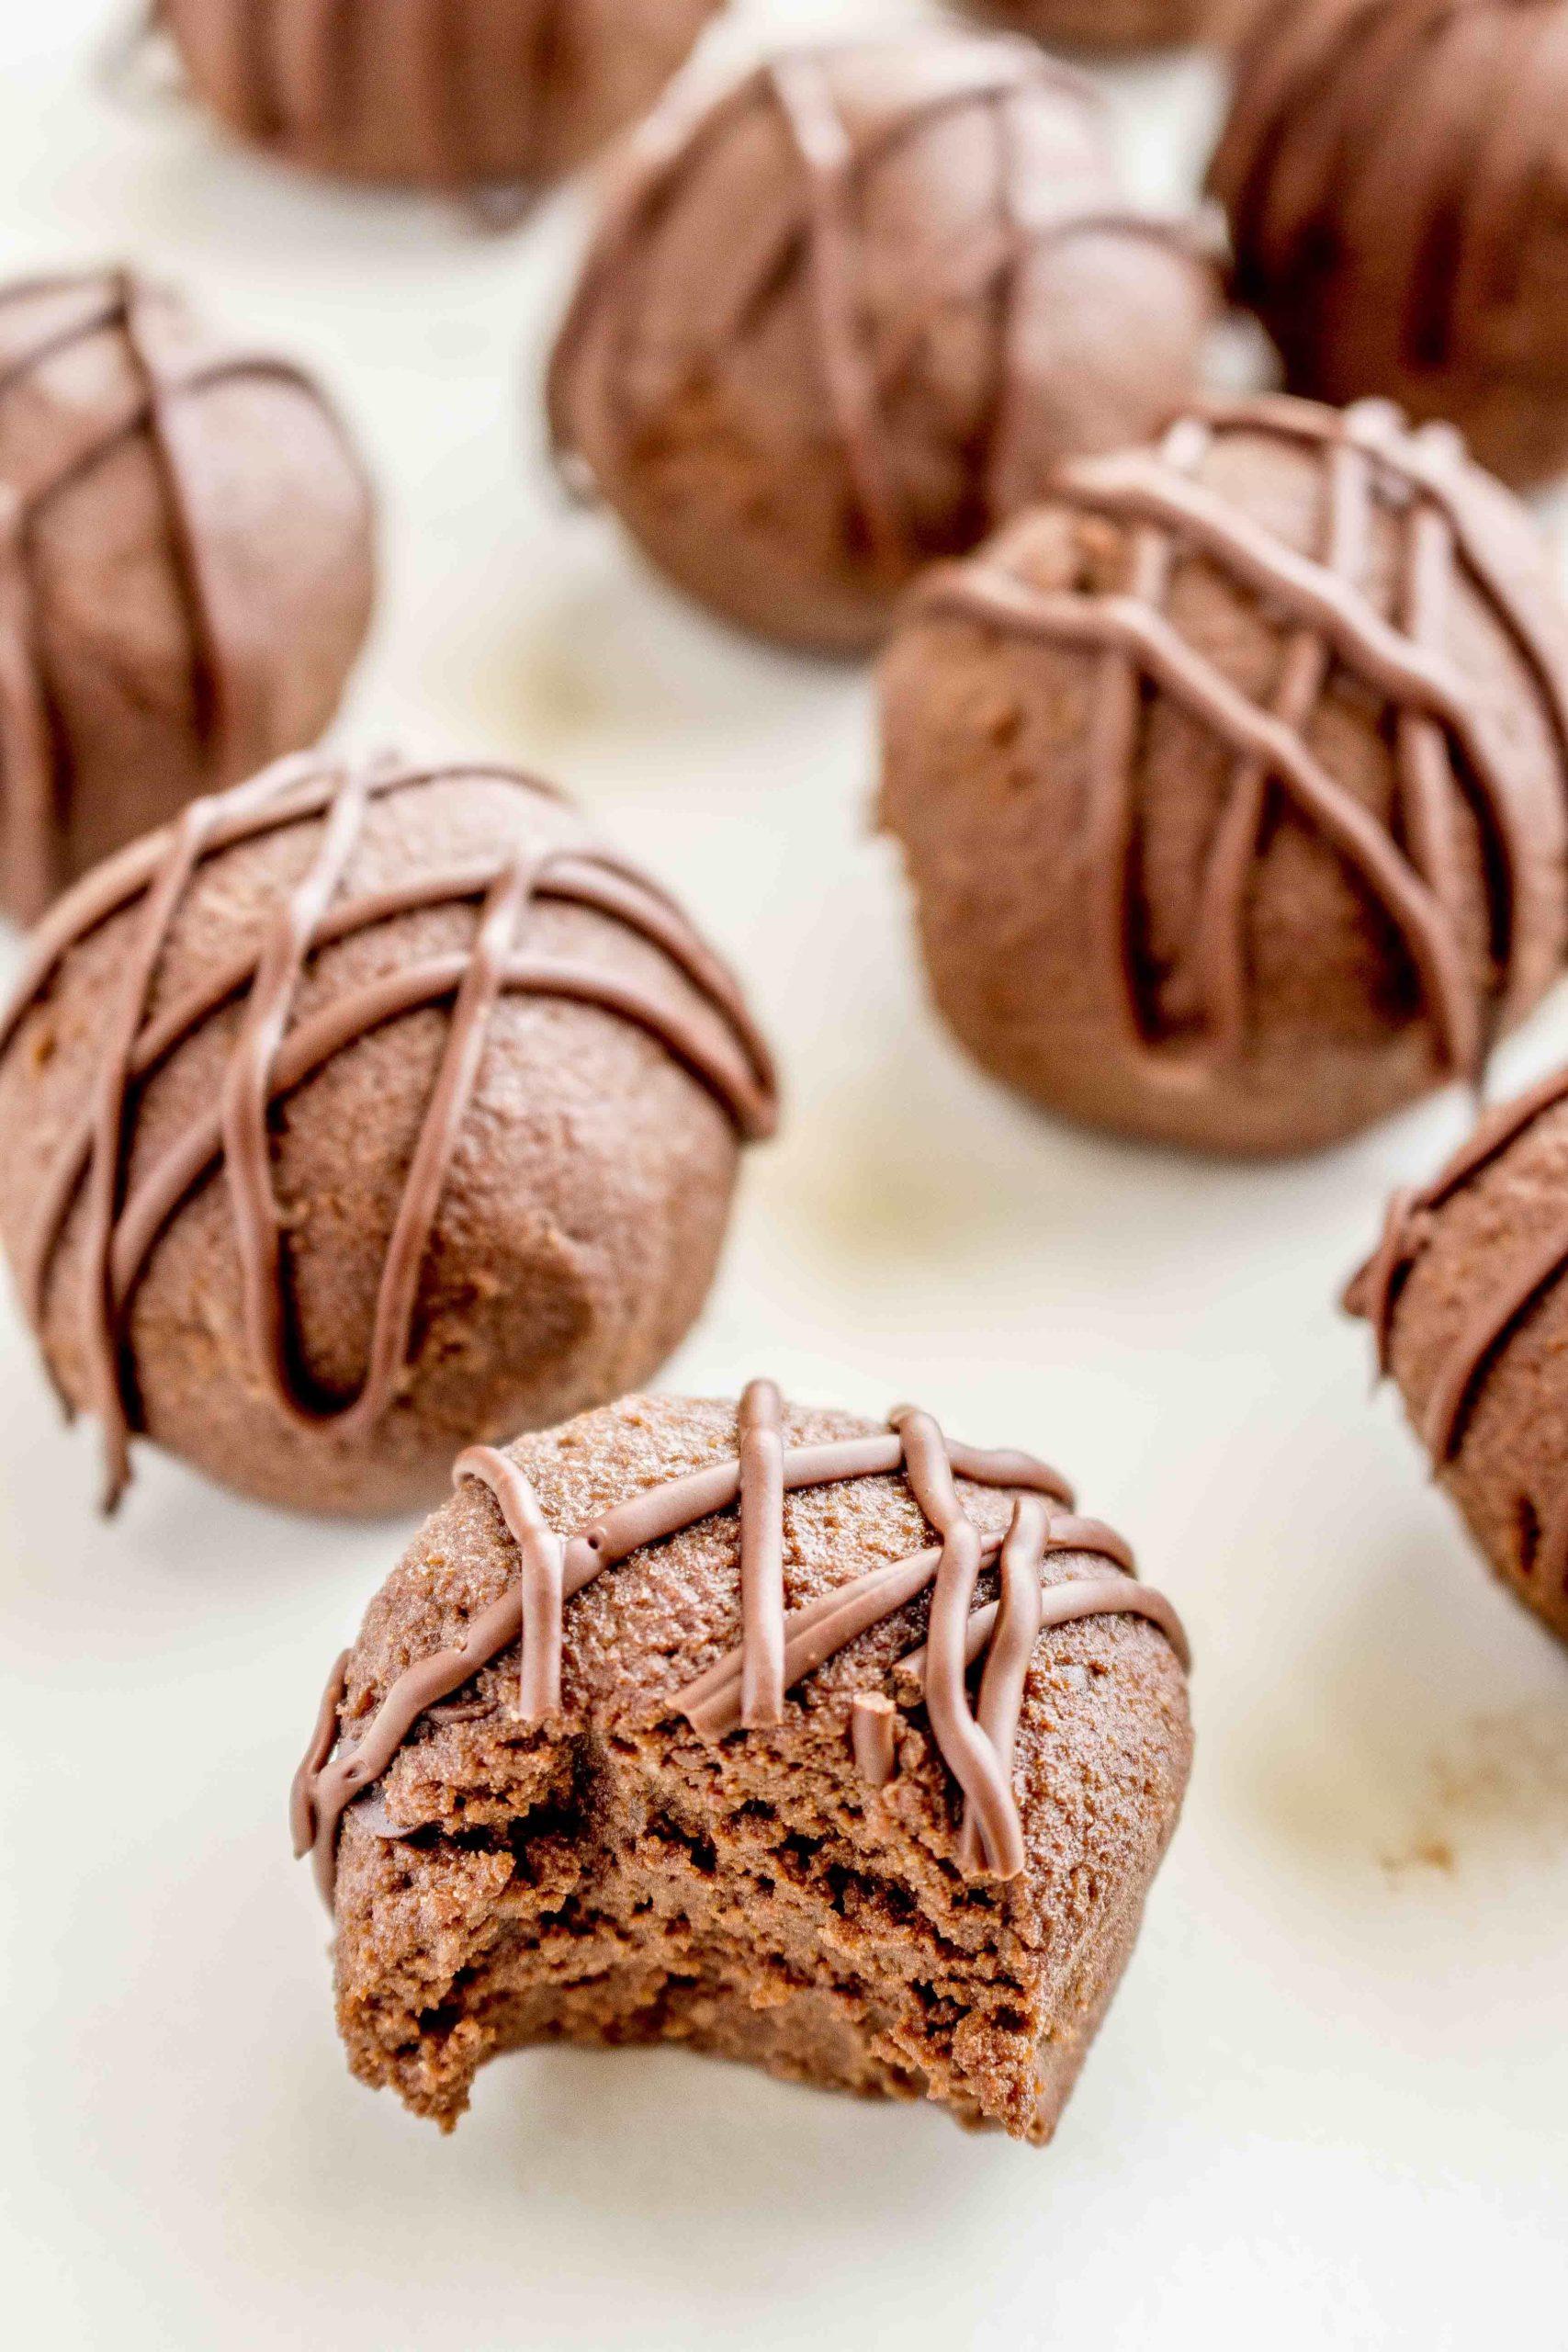 Chocolate Protein Balls (10 minutes - Gluten Free + Grain Free)